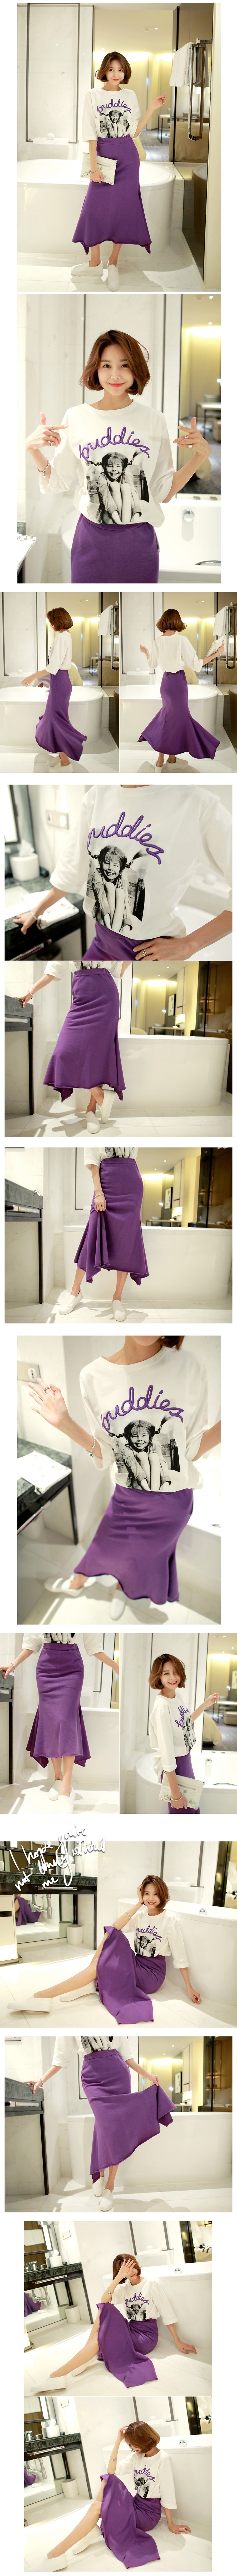 韩国正品 MAGZERO 不对称剪裁长款半身裙 #紫色 均码(S-M) [免费配送]